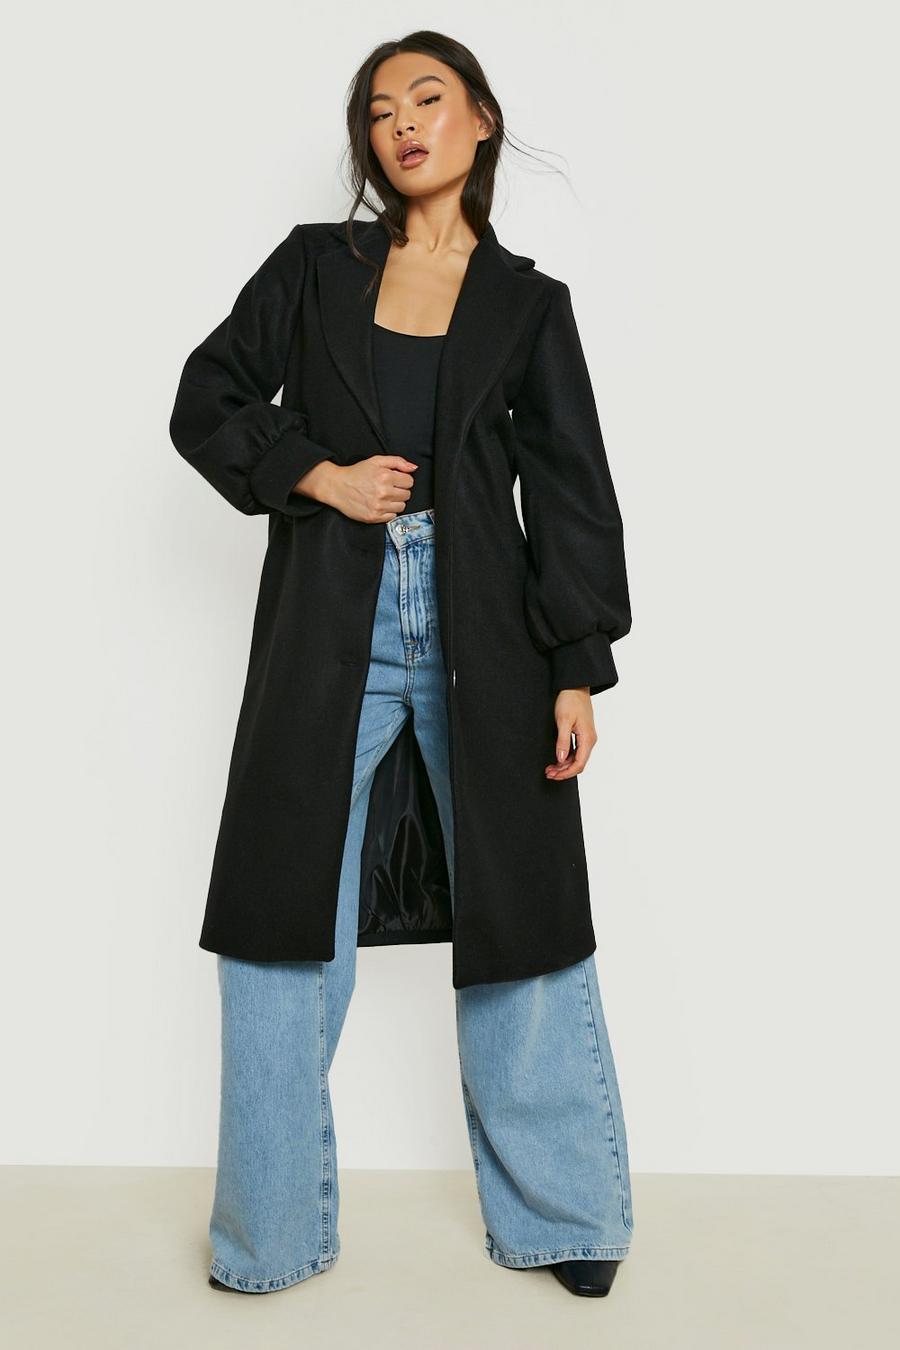 Black Volume Sleeve Wool Look Coat